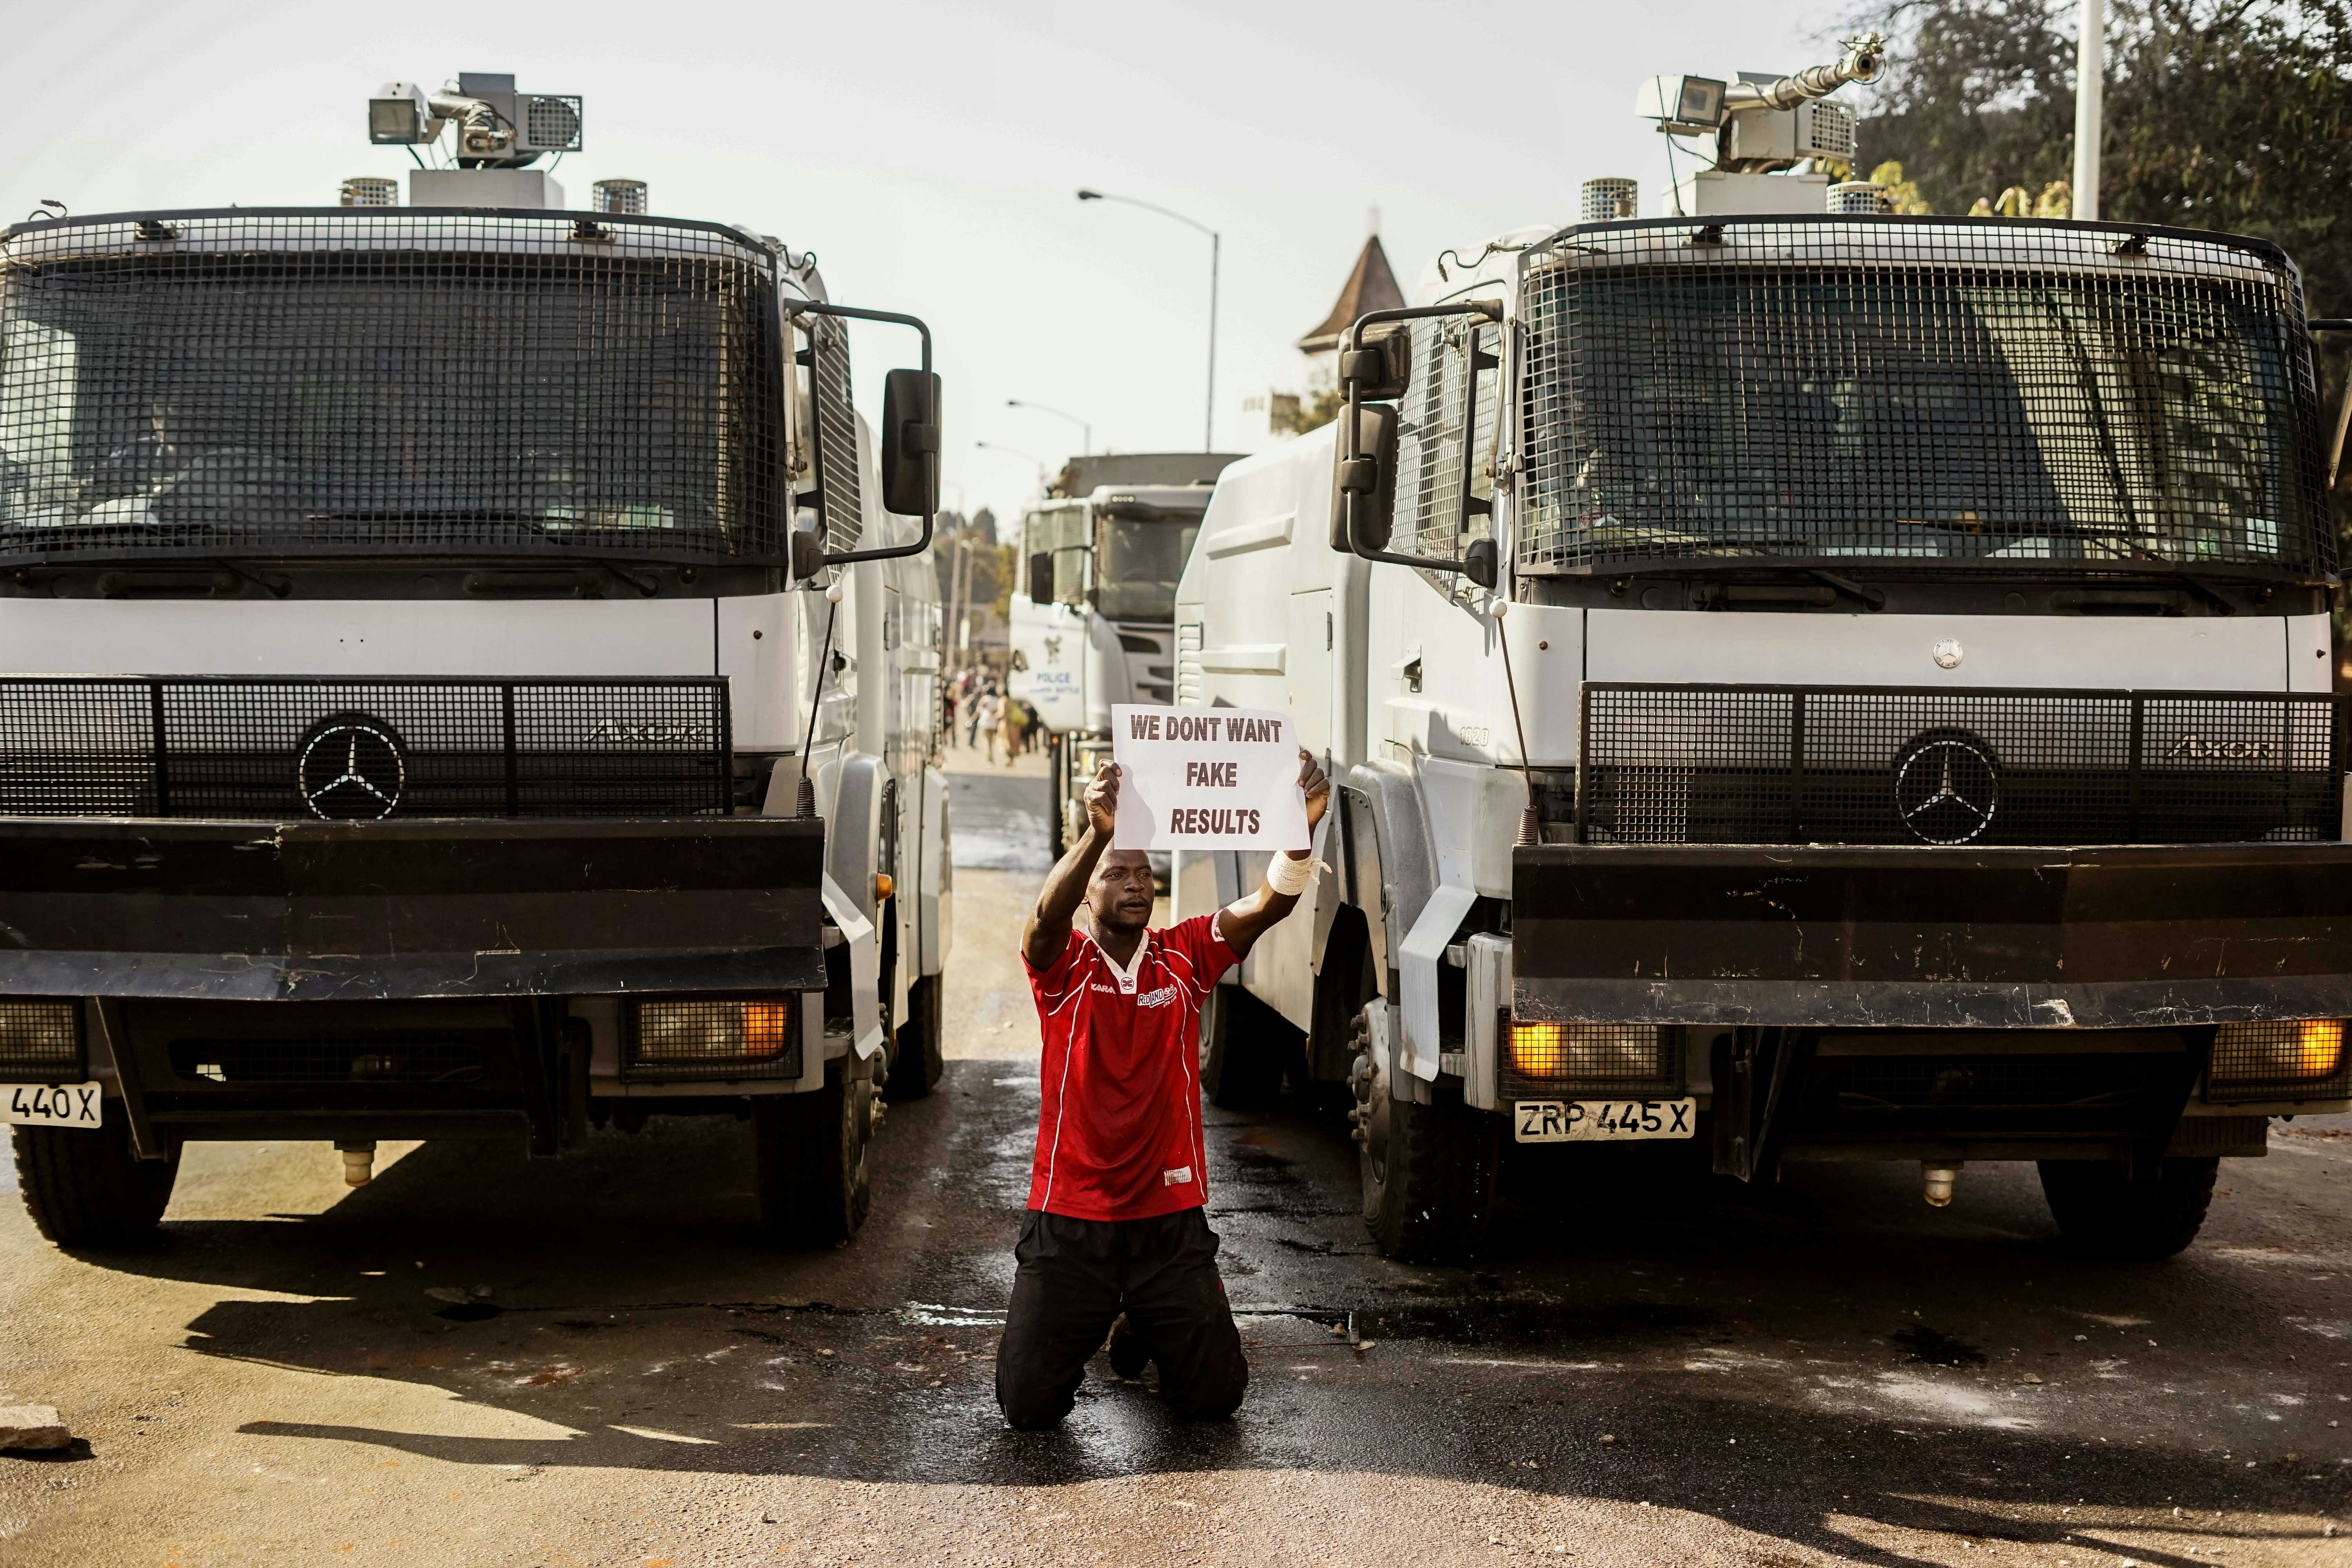 Manifestante segura cartaz enquanto se ajoelha em frente aos canhões de água da polícia em Harare, no dia 1º de agosto de 2018, quando protestos irromperam por conta de suposta fraude nas eleições do Zimbábue.